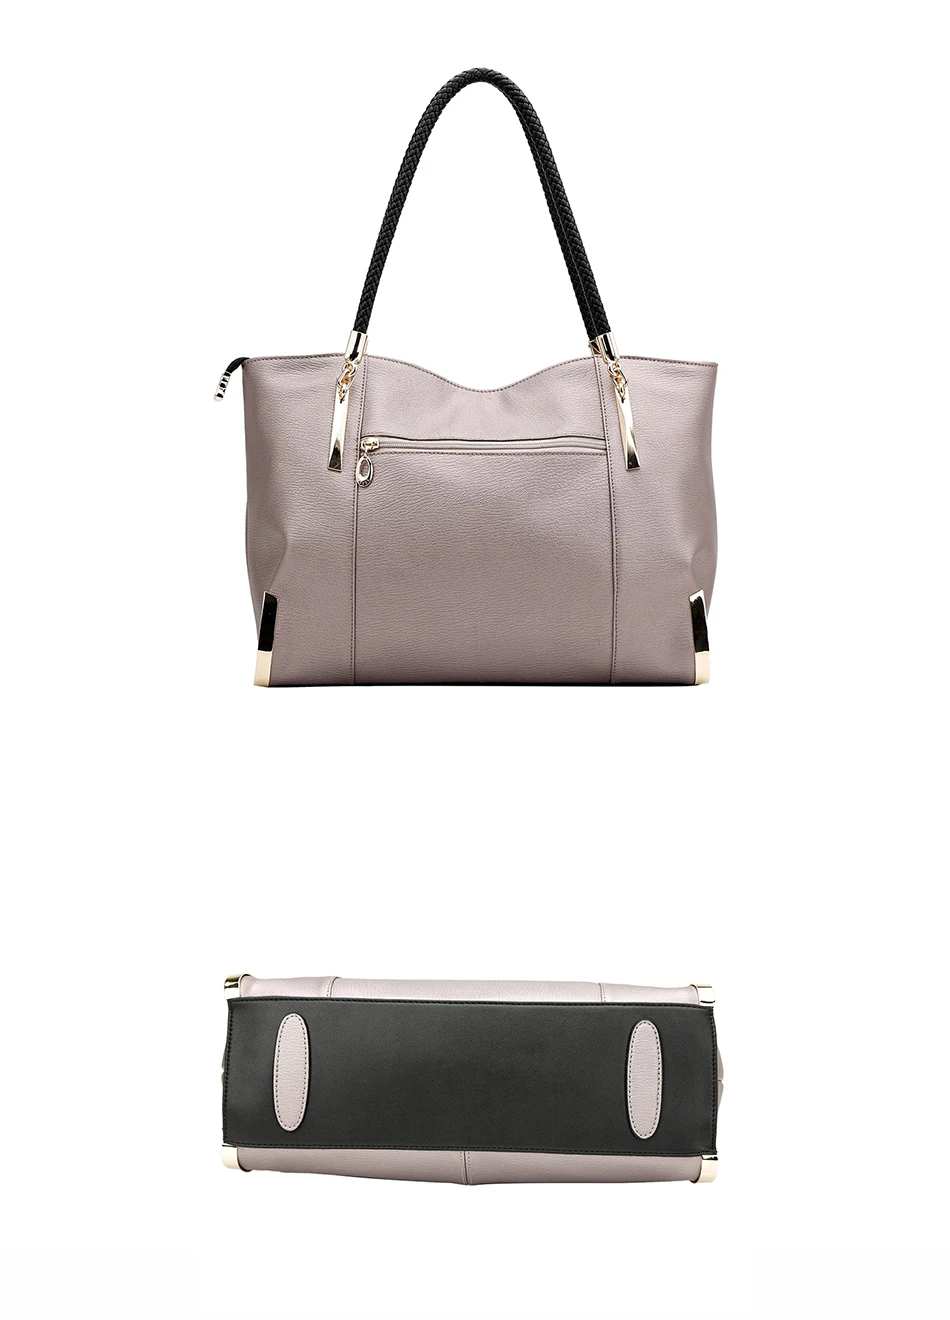 FOXER, женские сумки из коровьей кожи, сумка на плечо, модная, топ-ручка, сумка-тоут, универсальные сумки, Роскошные, высокое качество, Большая вместительная сумка